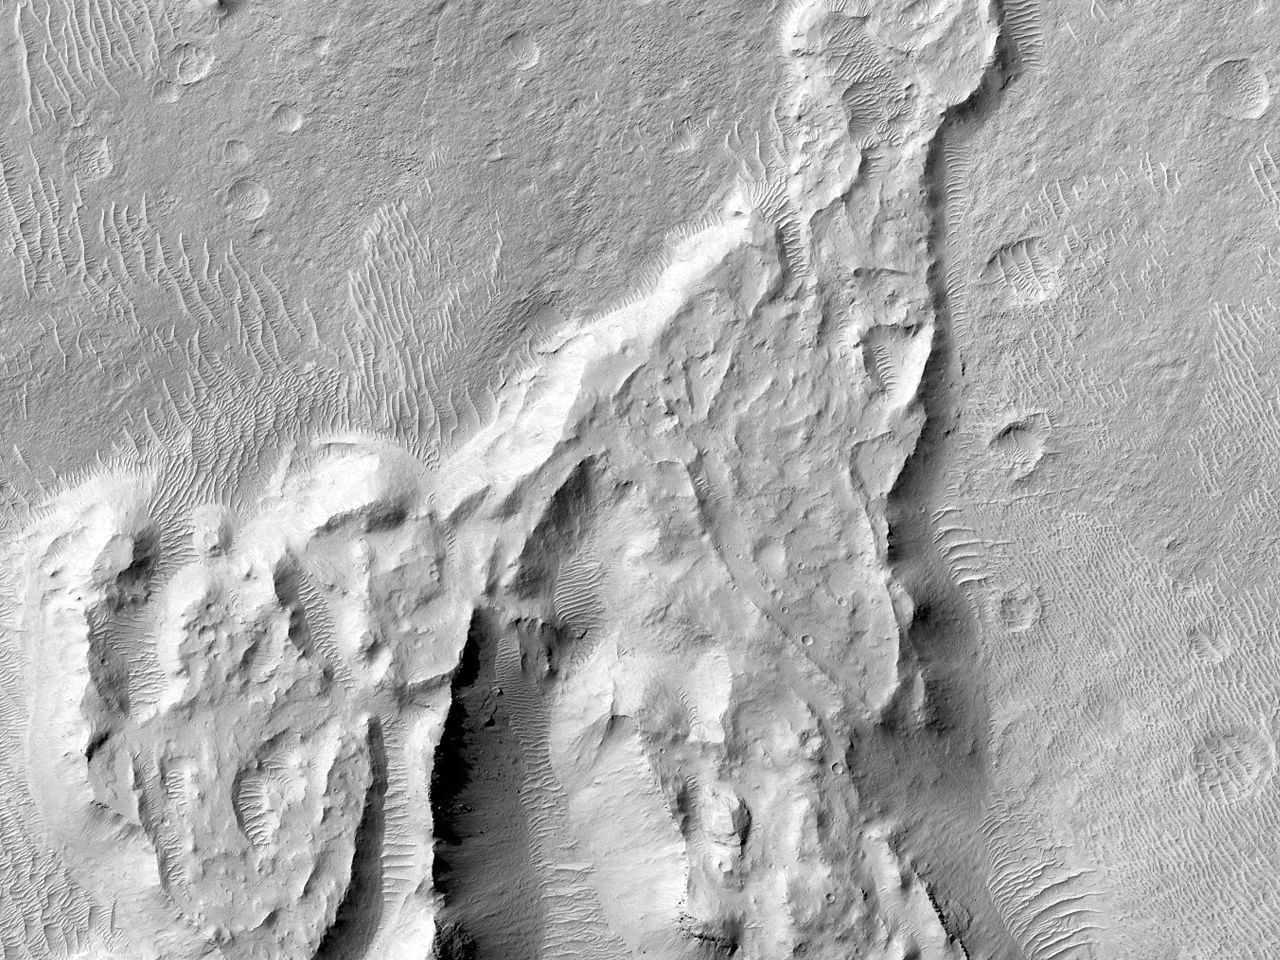 火星雅丹地貌中曲折多叉的山脊